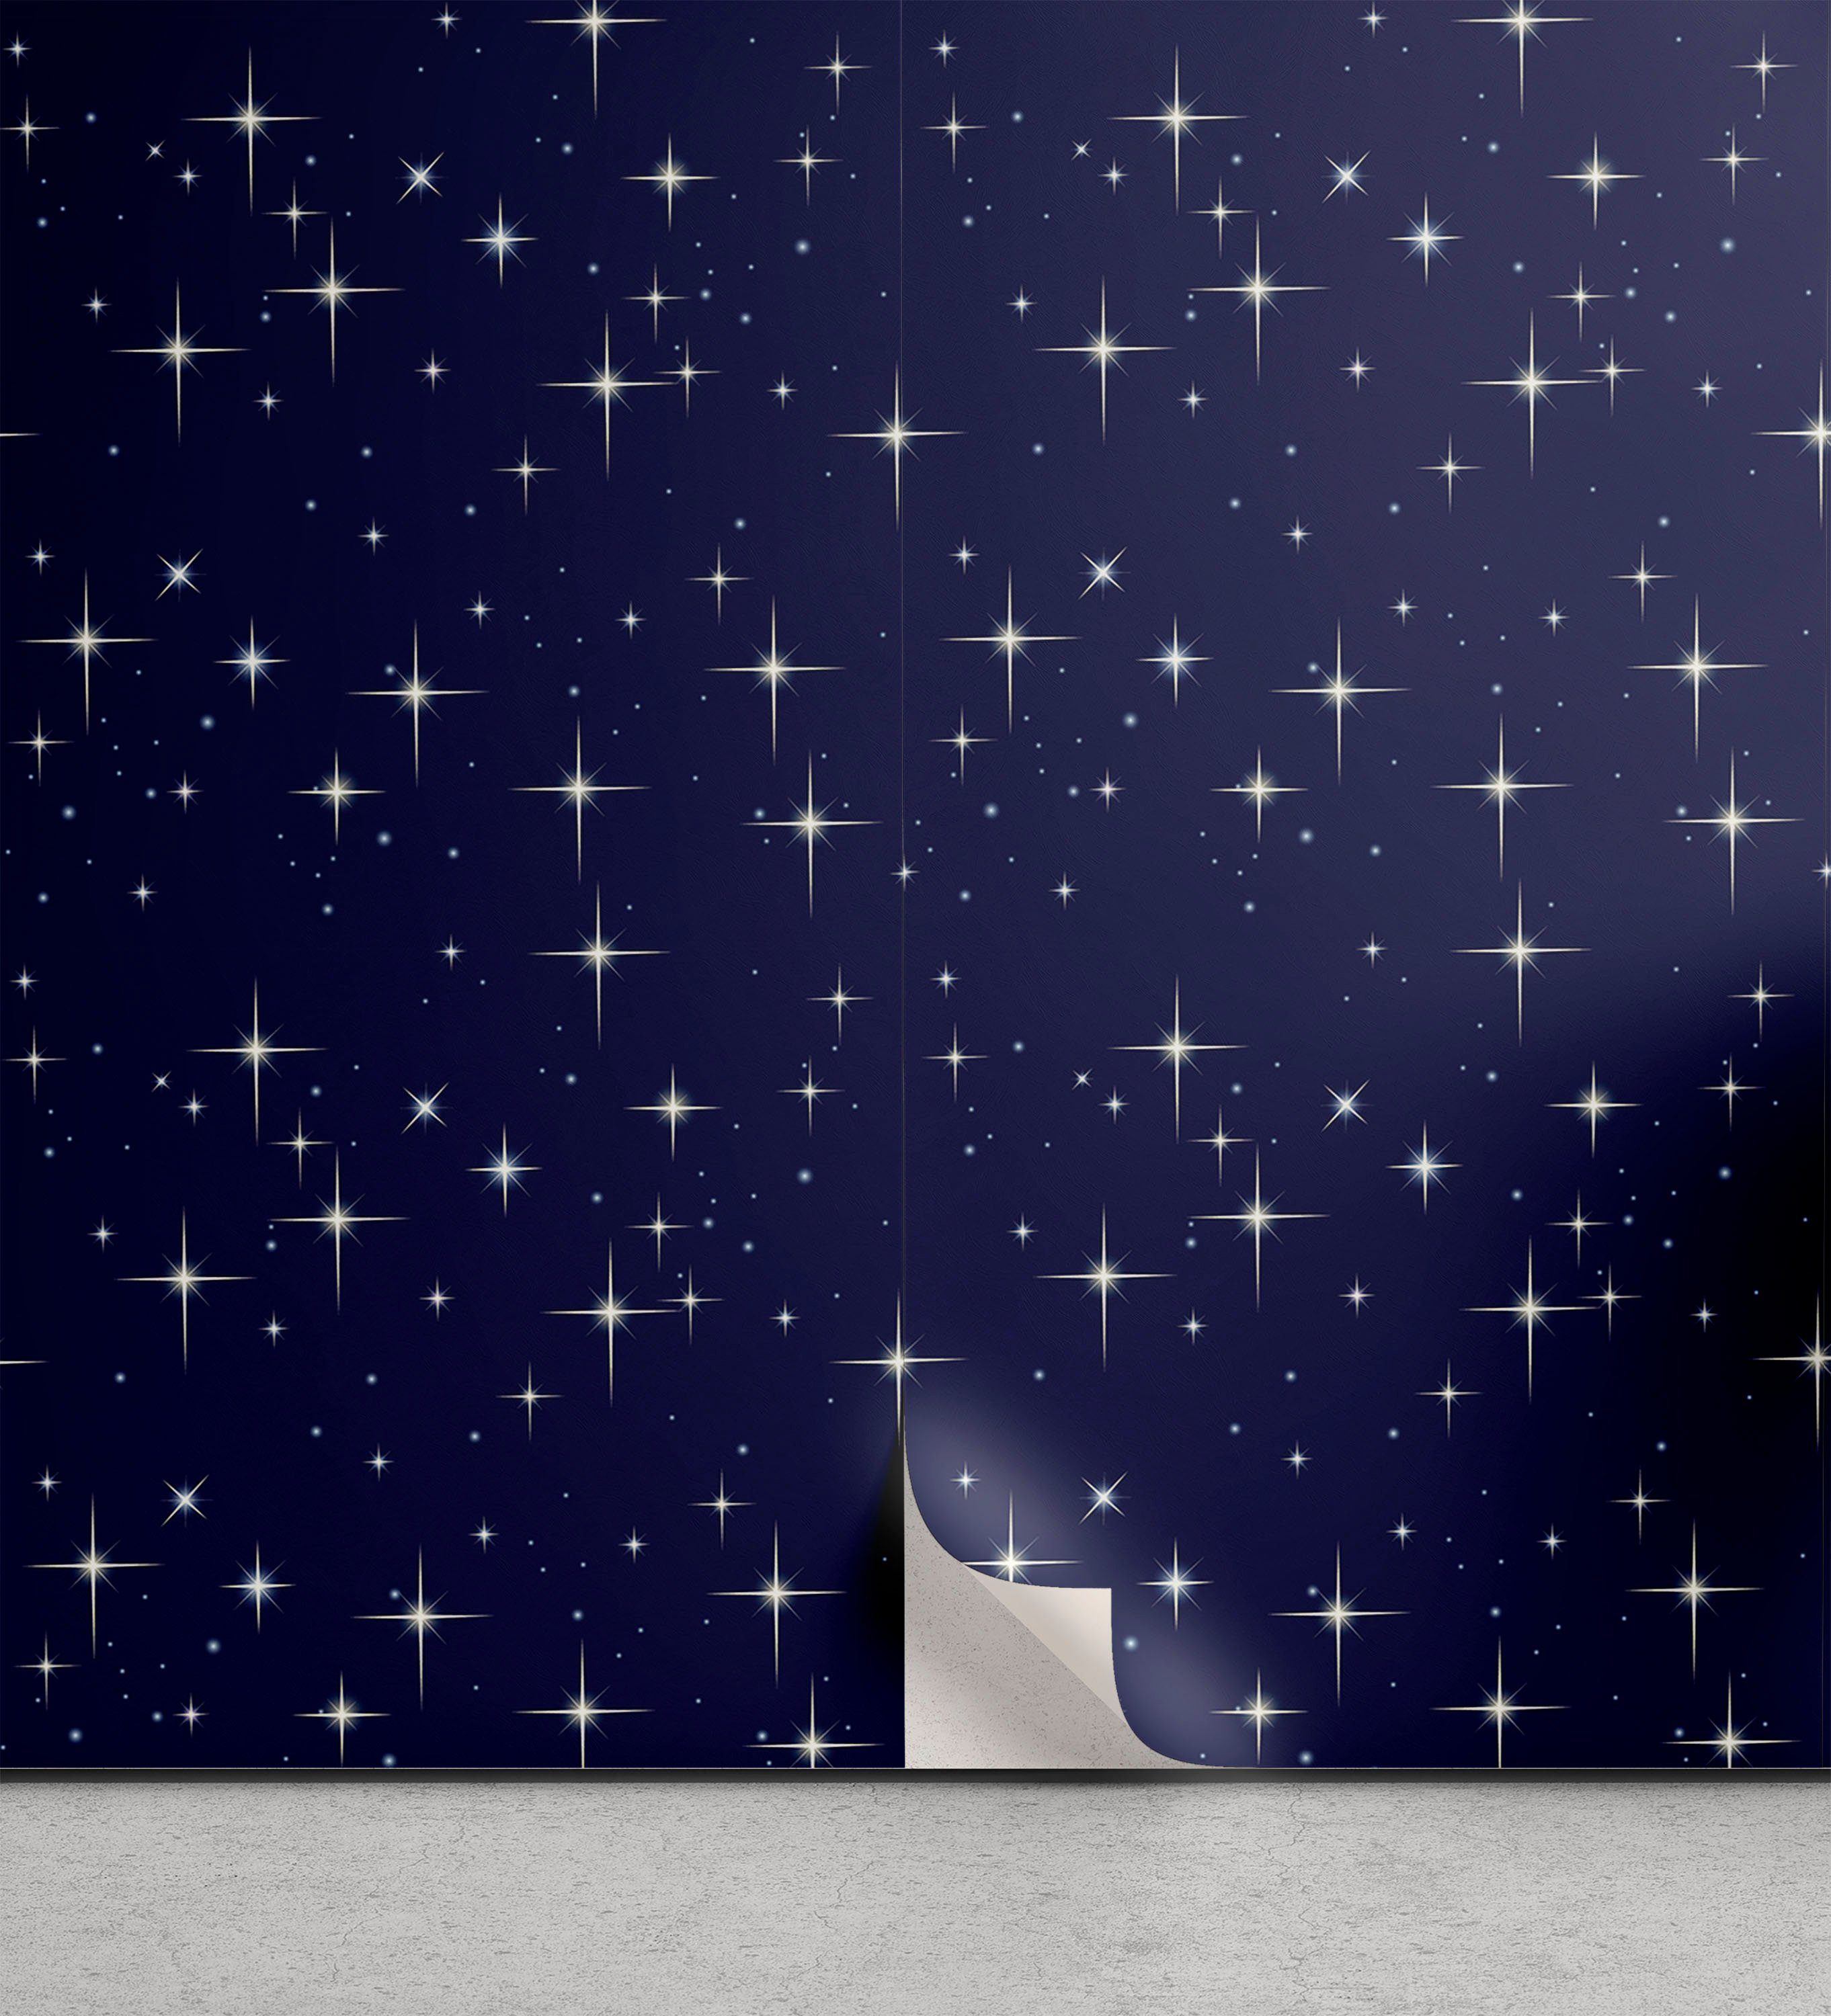 Abakuhaus Vinyltapete selbstklebendes Wohnzimmer Küchenakzent, Platz Nacht Skyline mit Sternen